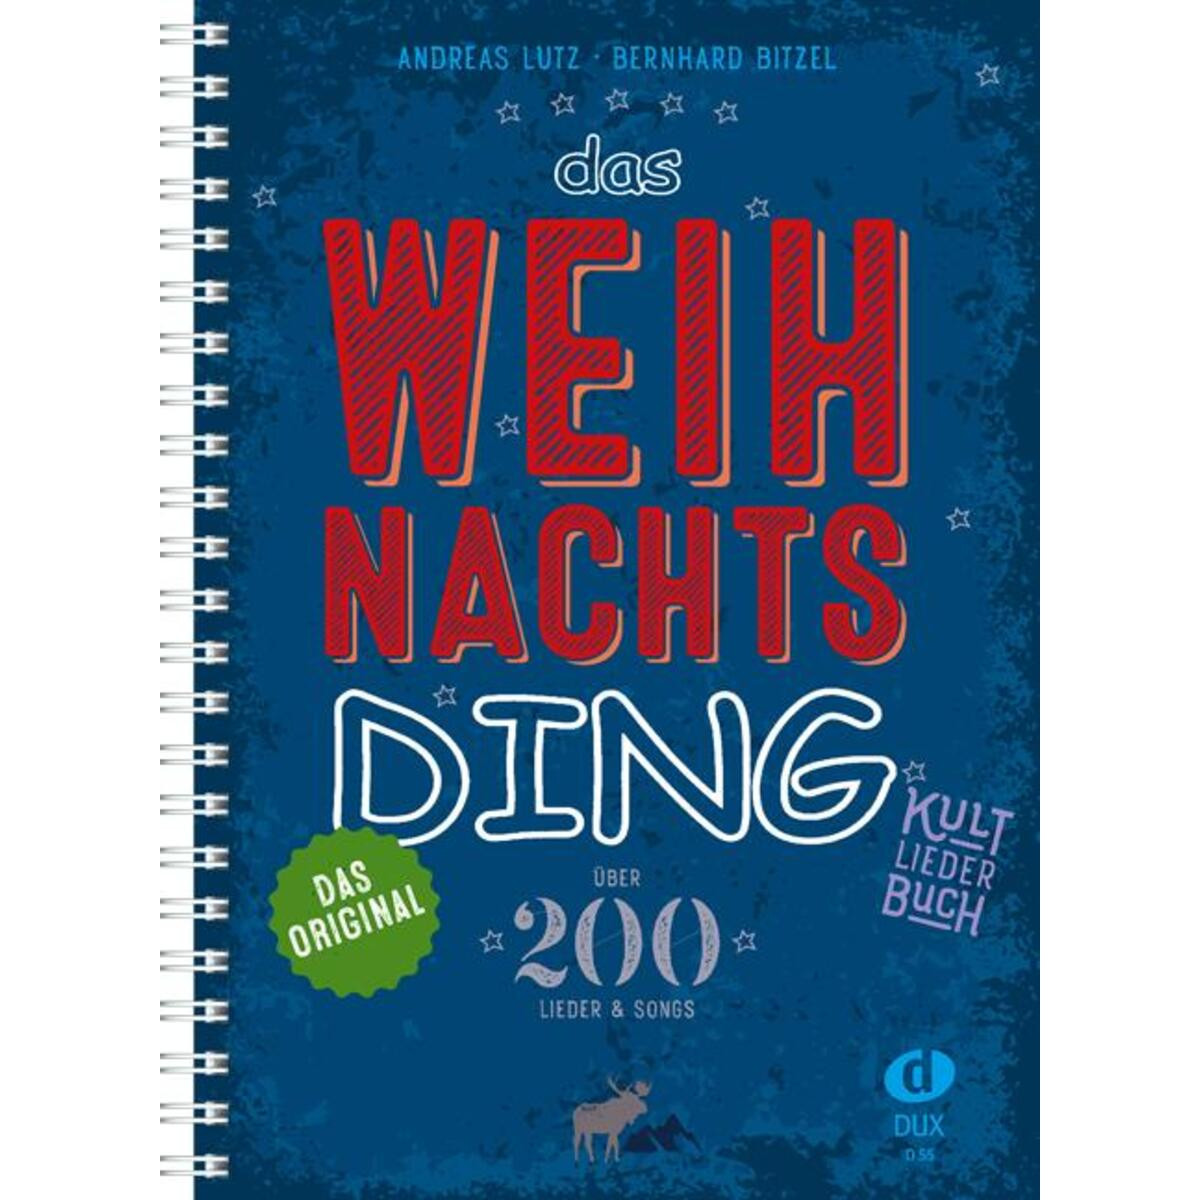 Das Weihnachts-Ding mit Noten, Cover, Verlag Musikverlag Dux